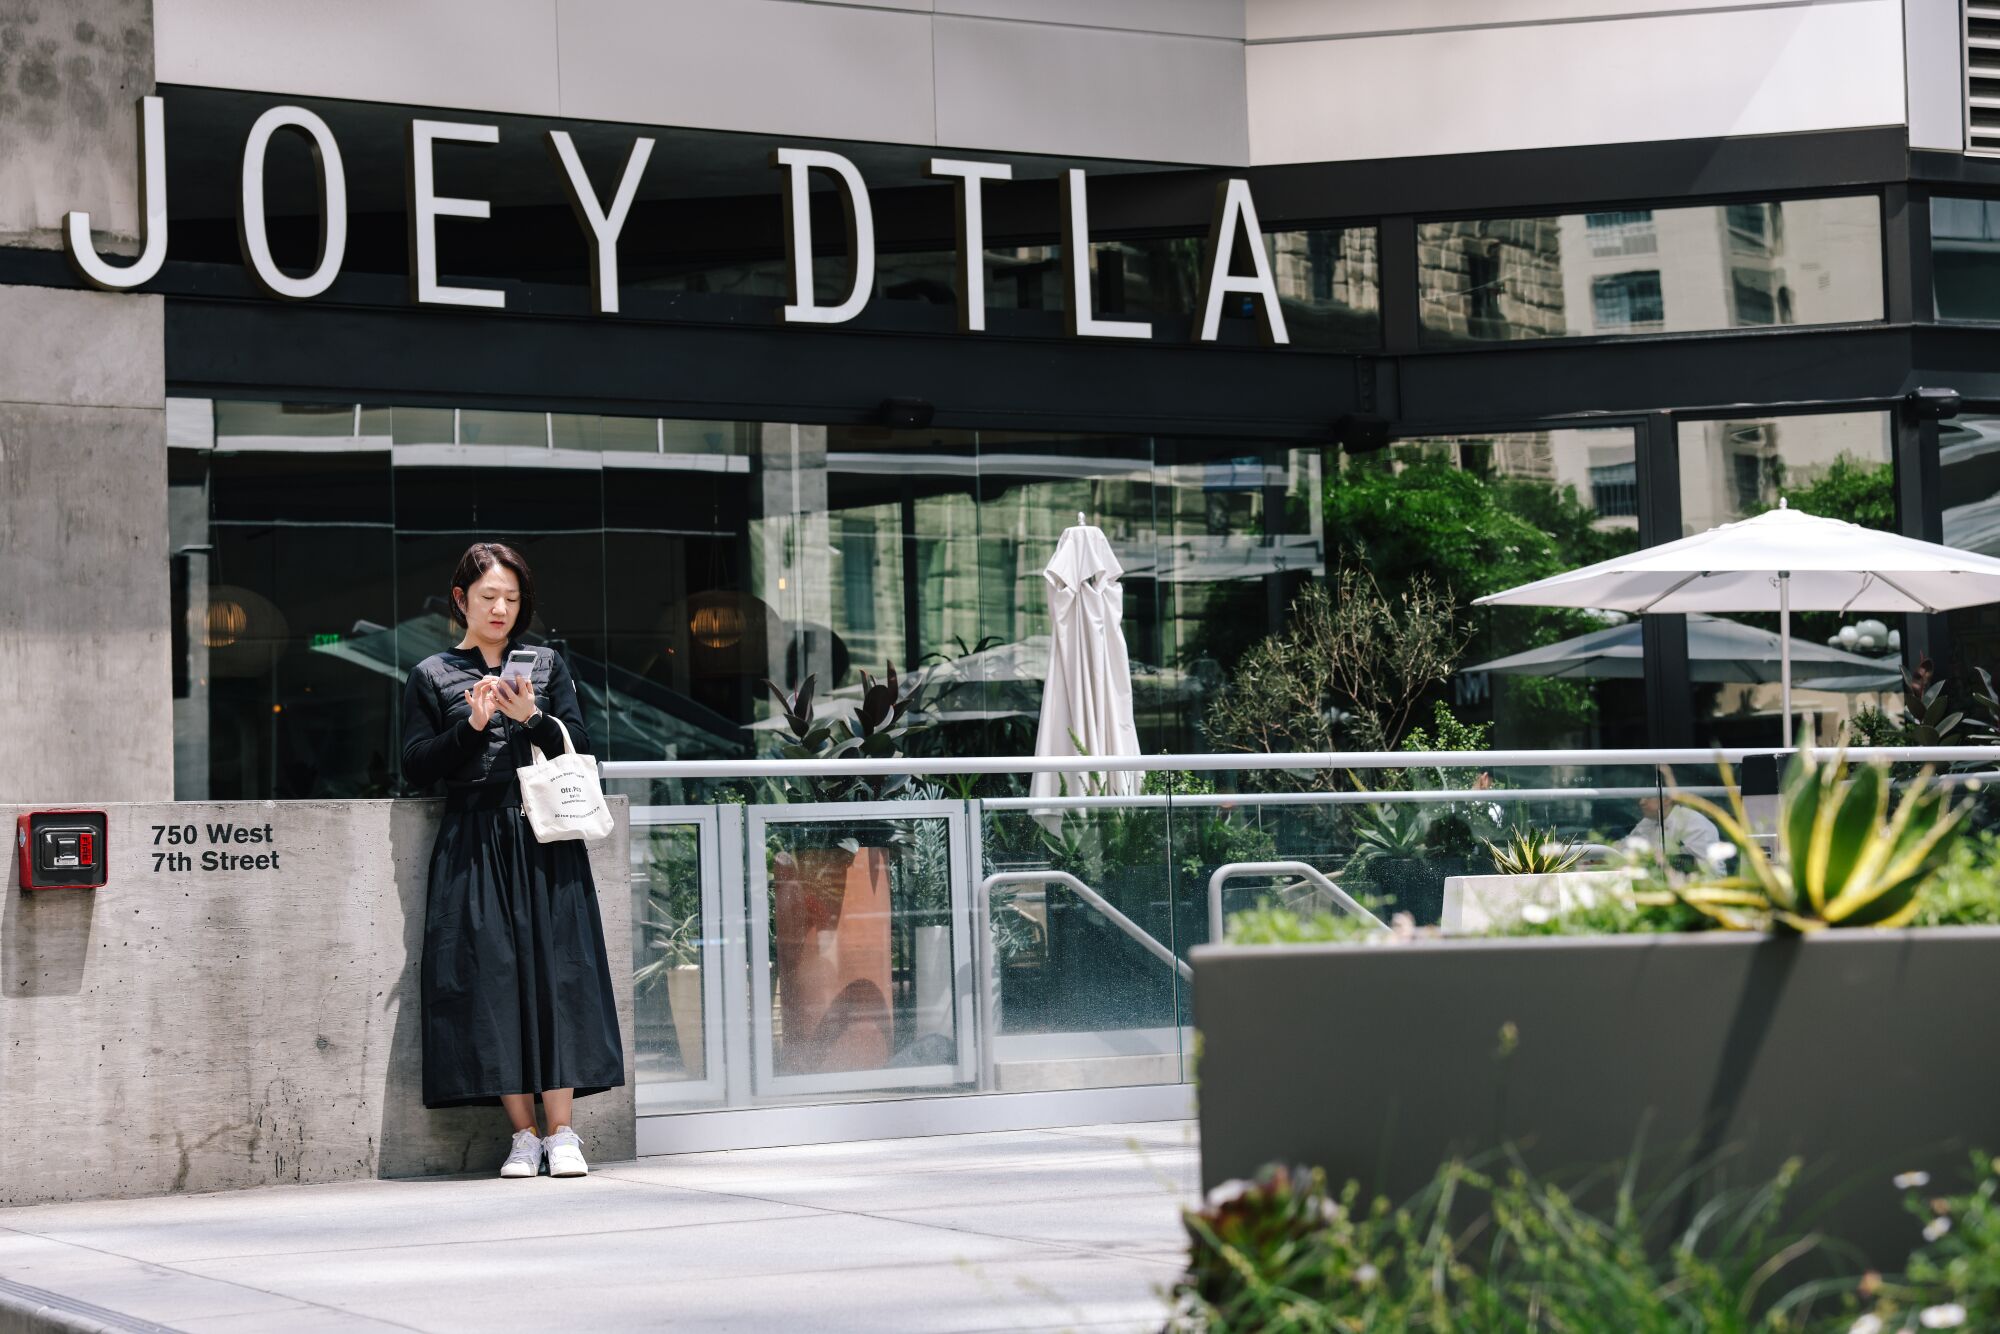 Bir kadın, şehir merkezinin finans bölgesindeki Joey DTLA restoranının önünde duruyor.